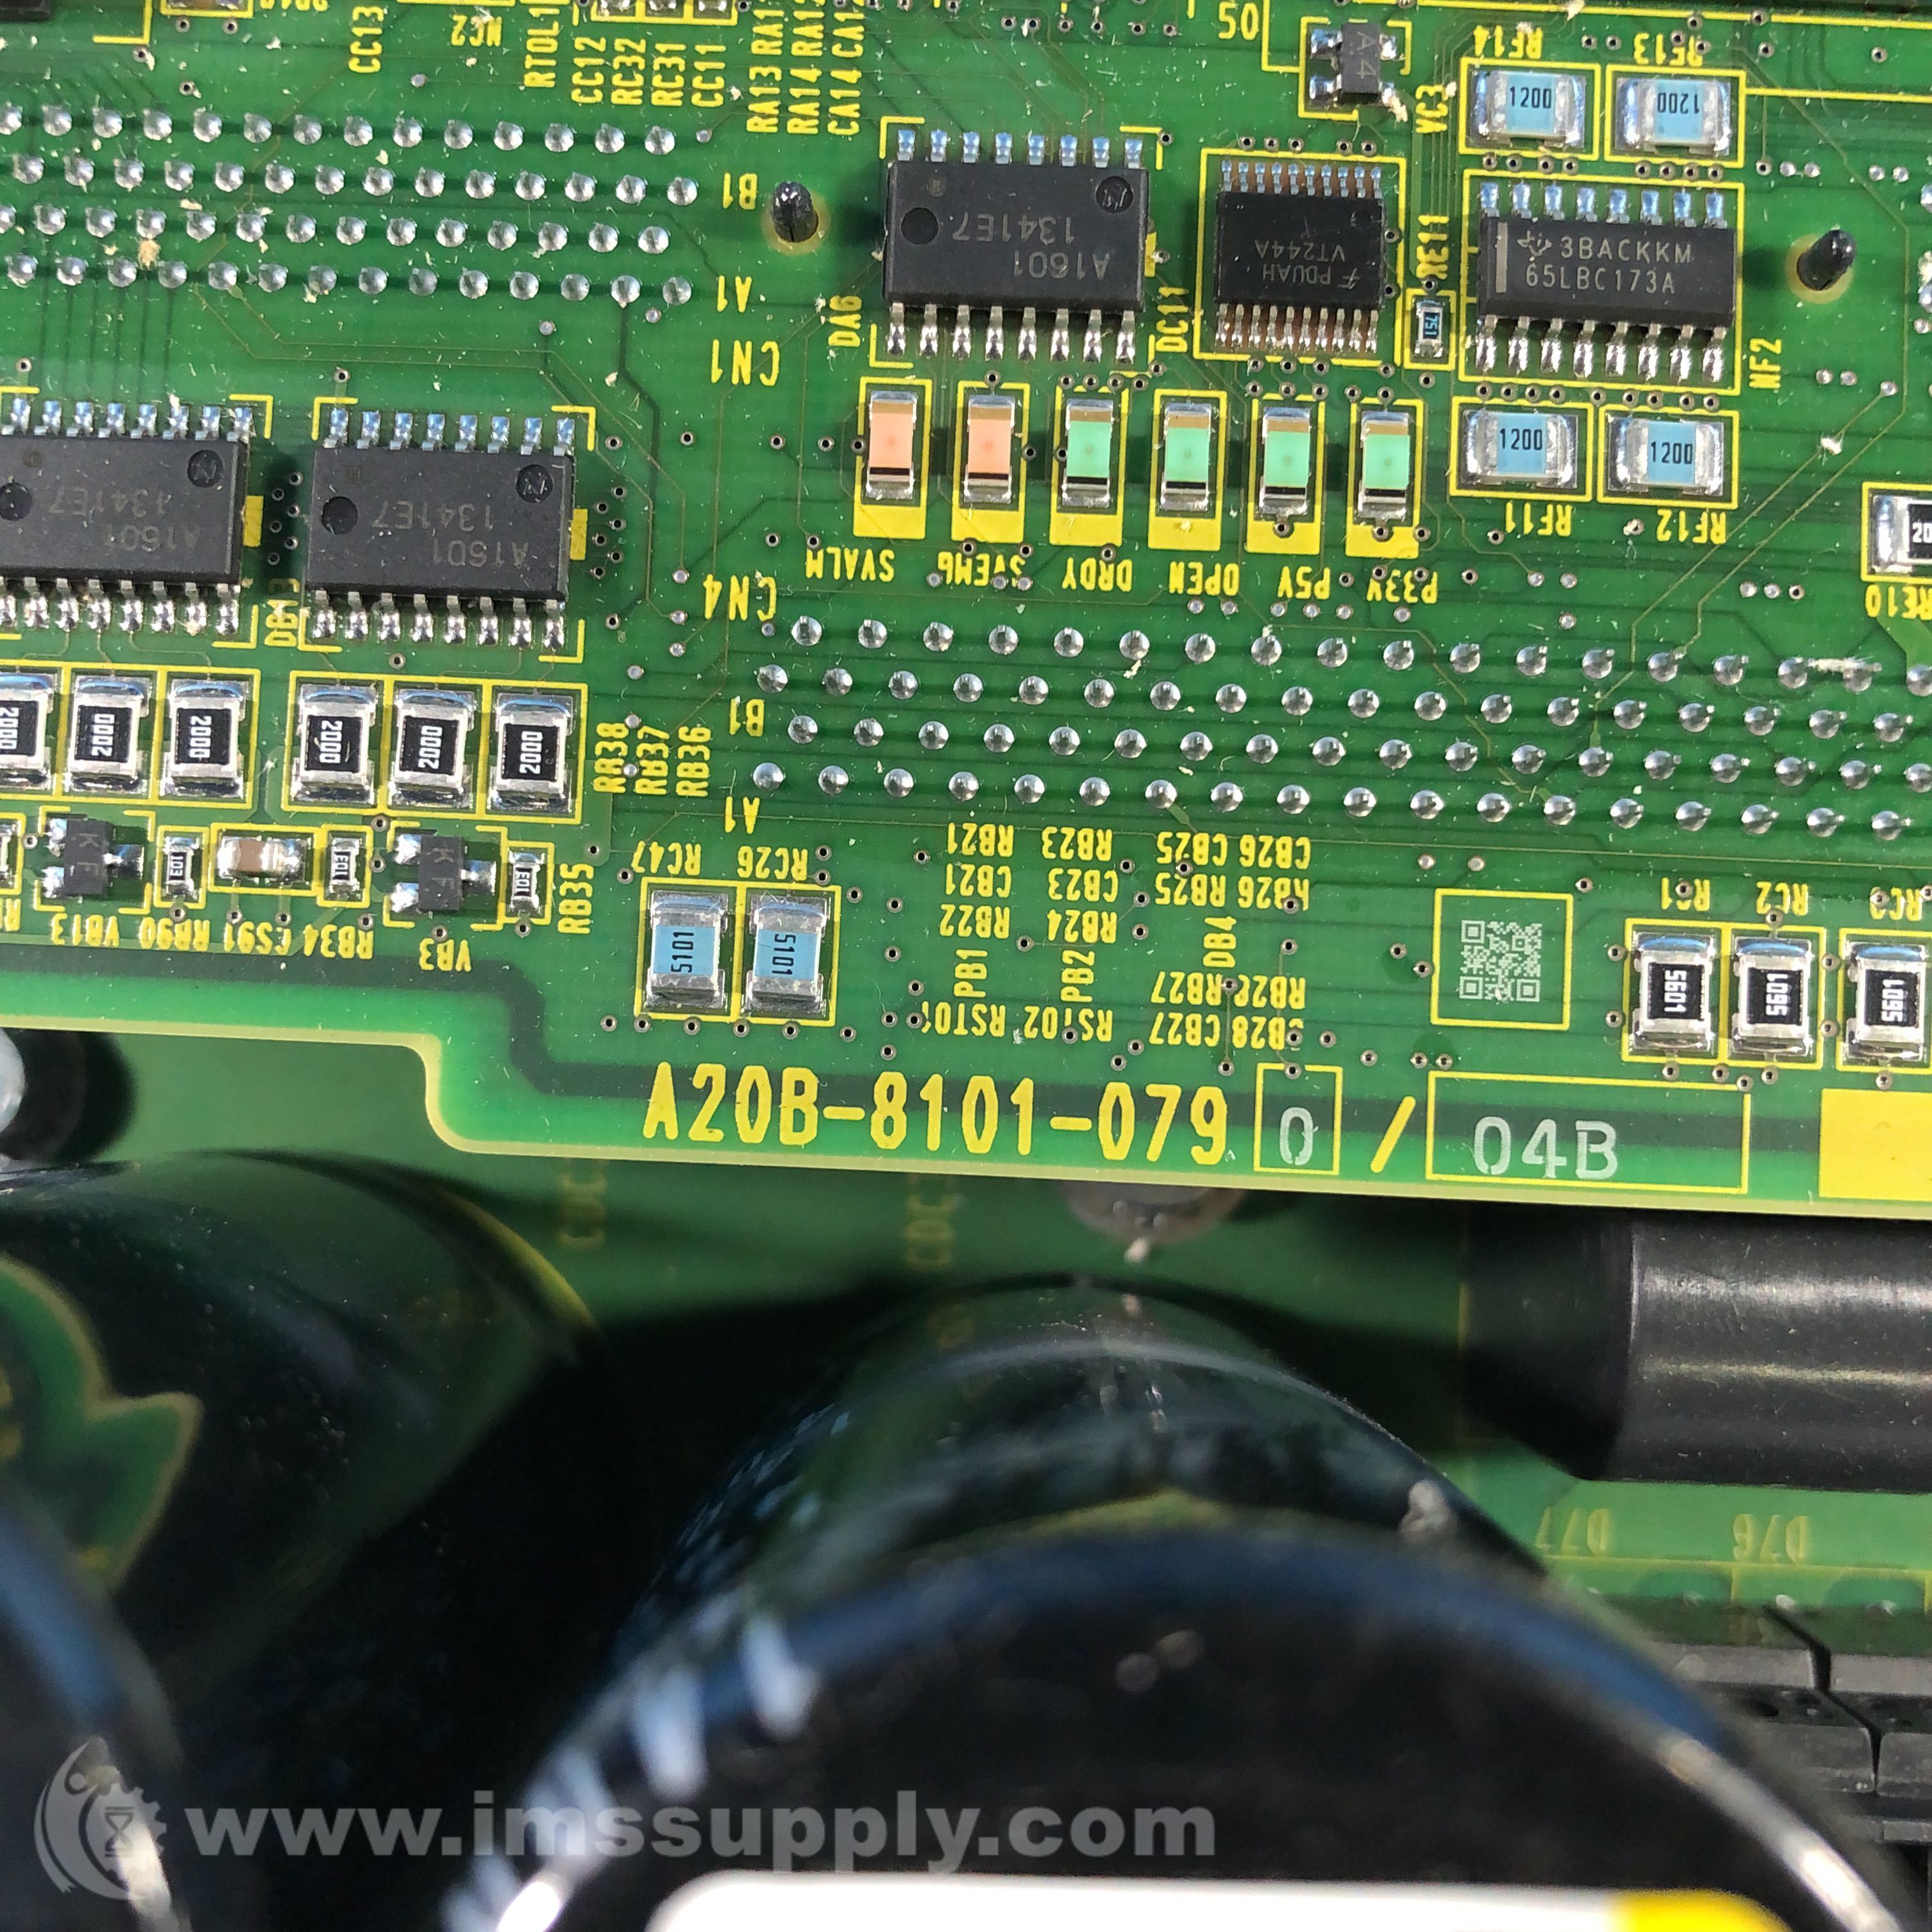 Fanuc A20B-8101-079 PC Servo Amplifier Control Board - IMS Supply